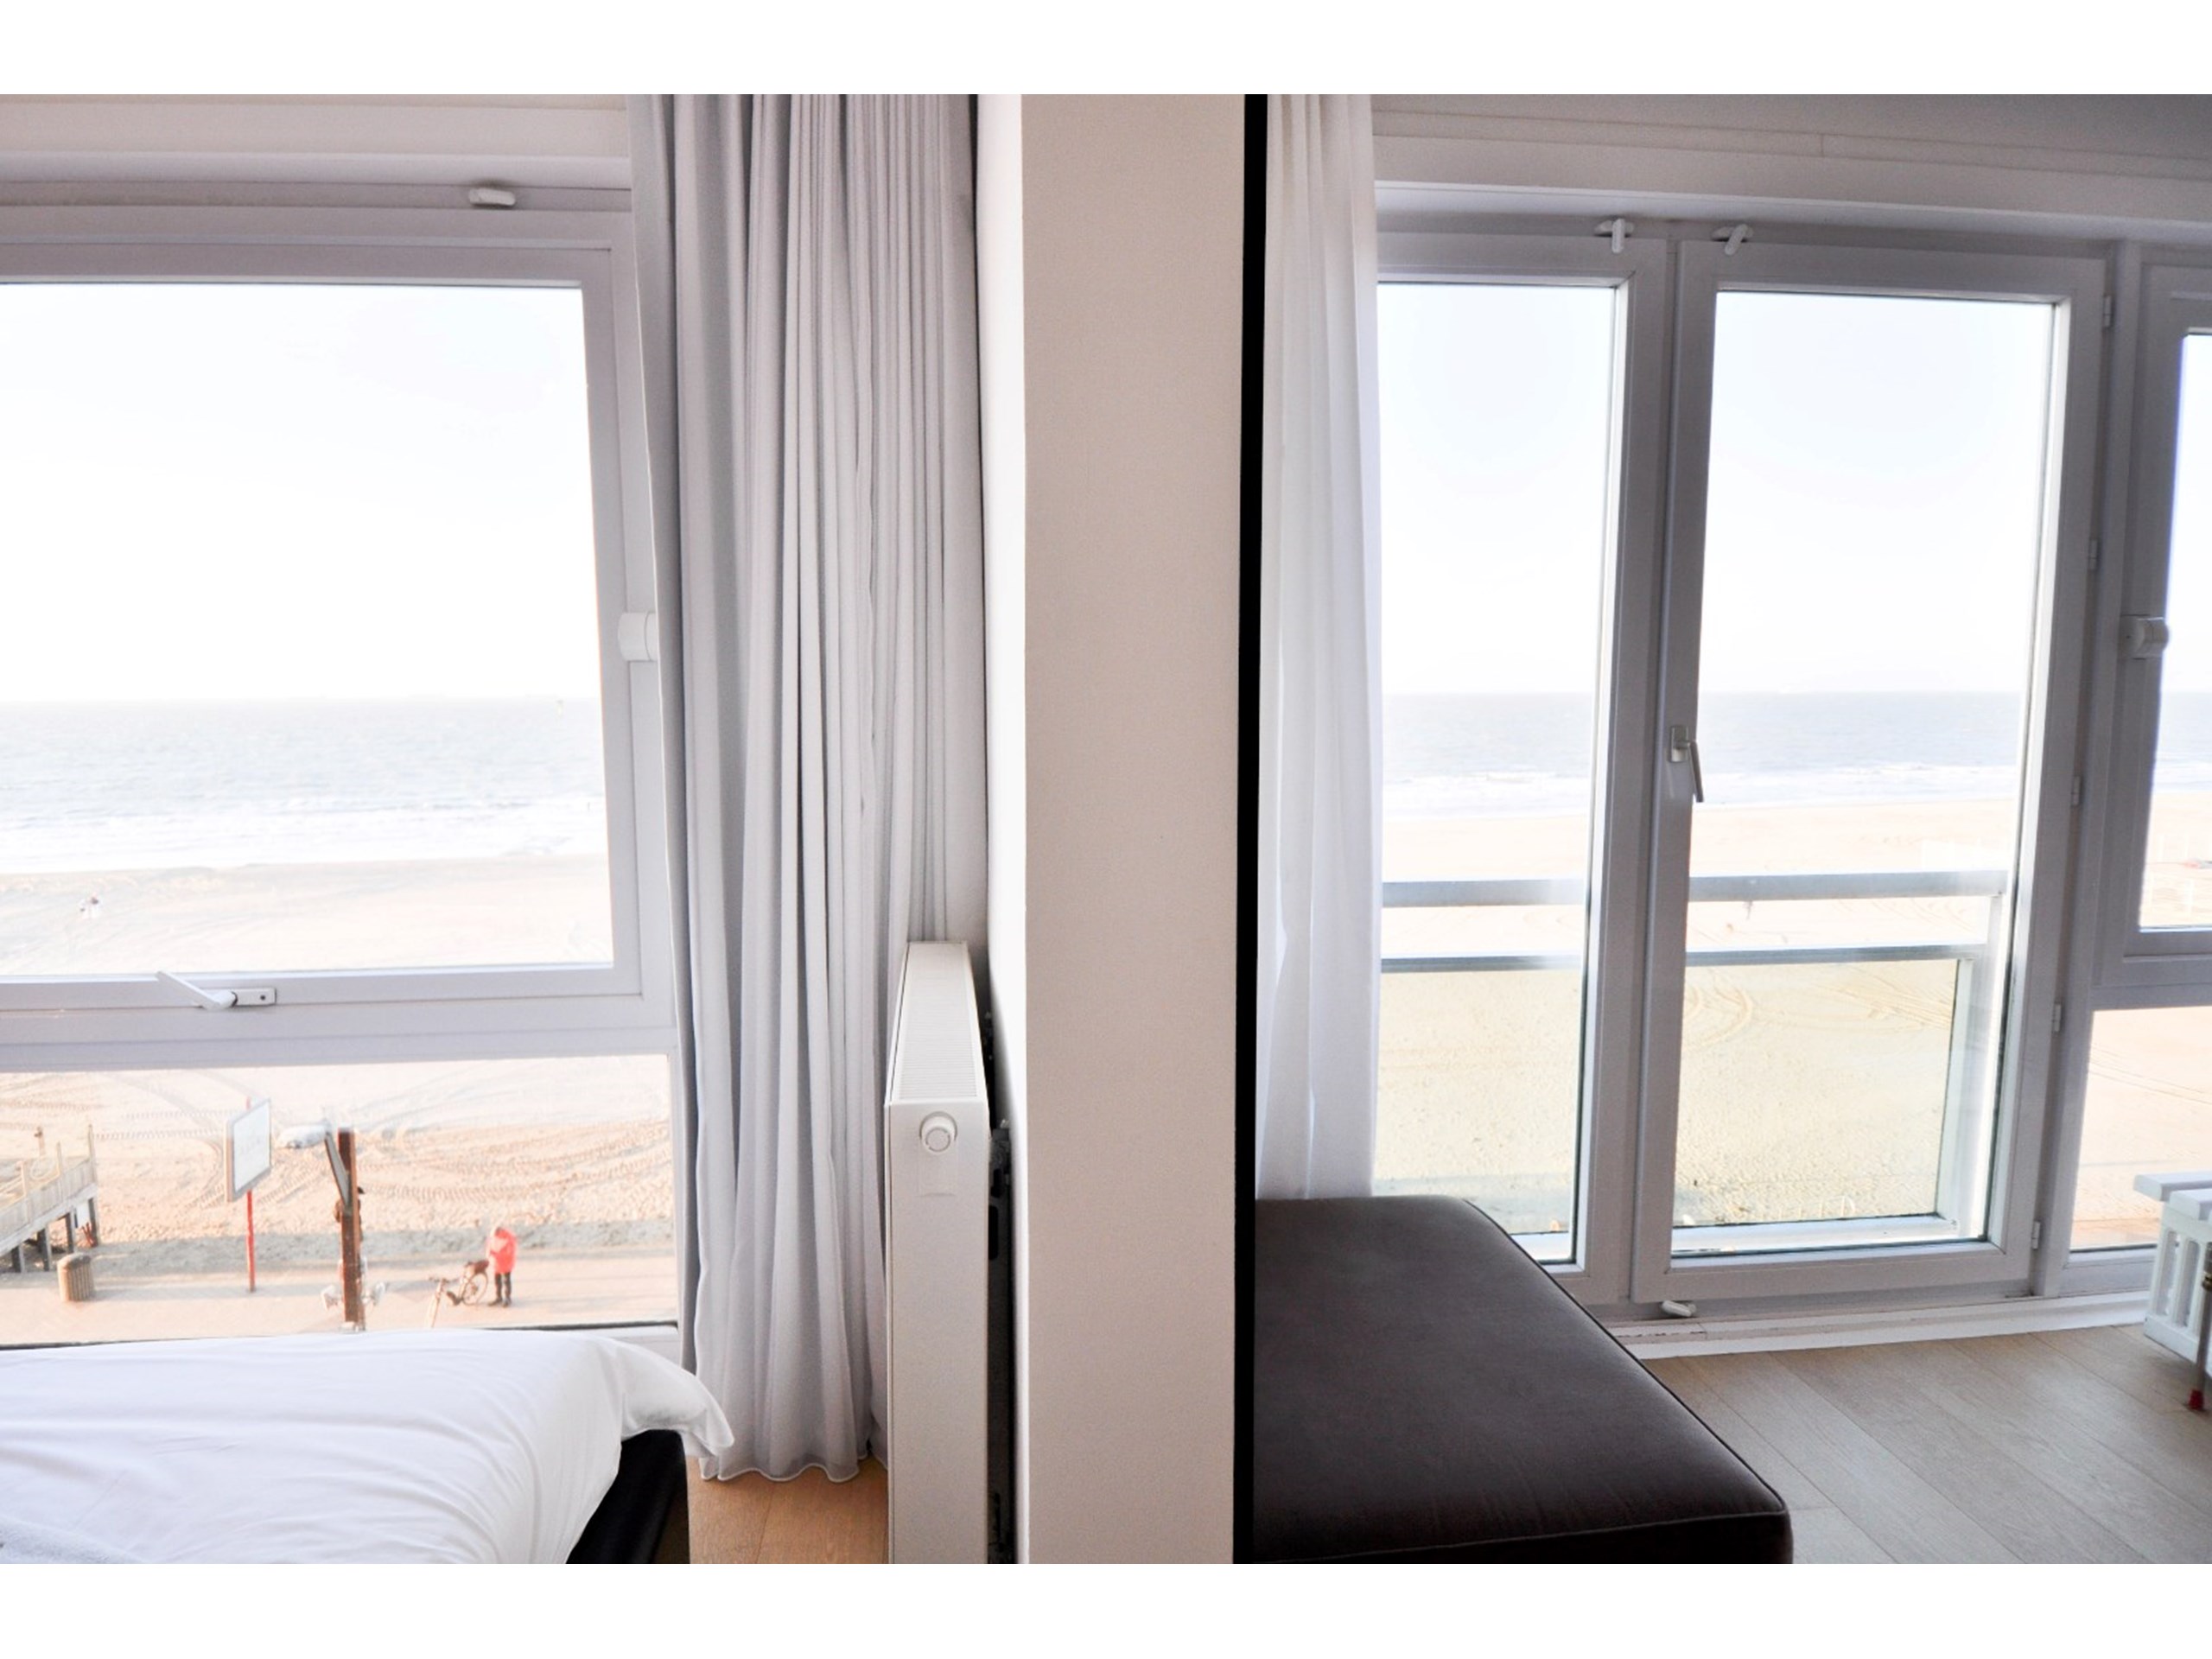 Appartement met frontaal zeezicht gelegen nabij het Albertplein. 